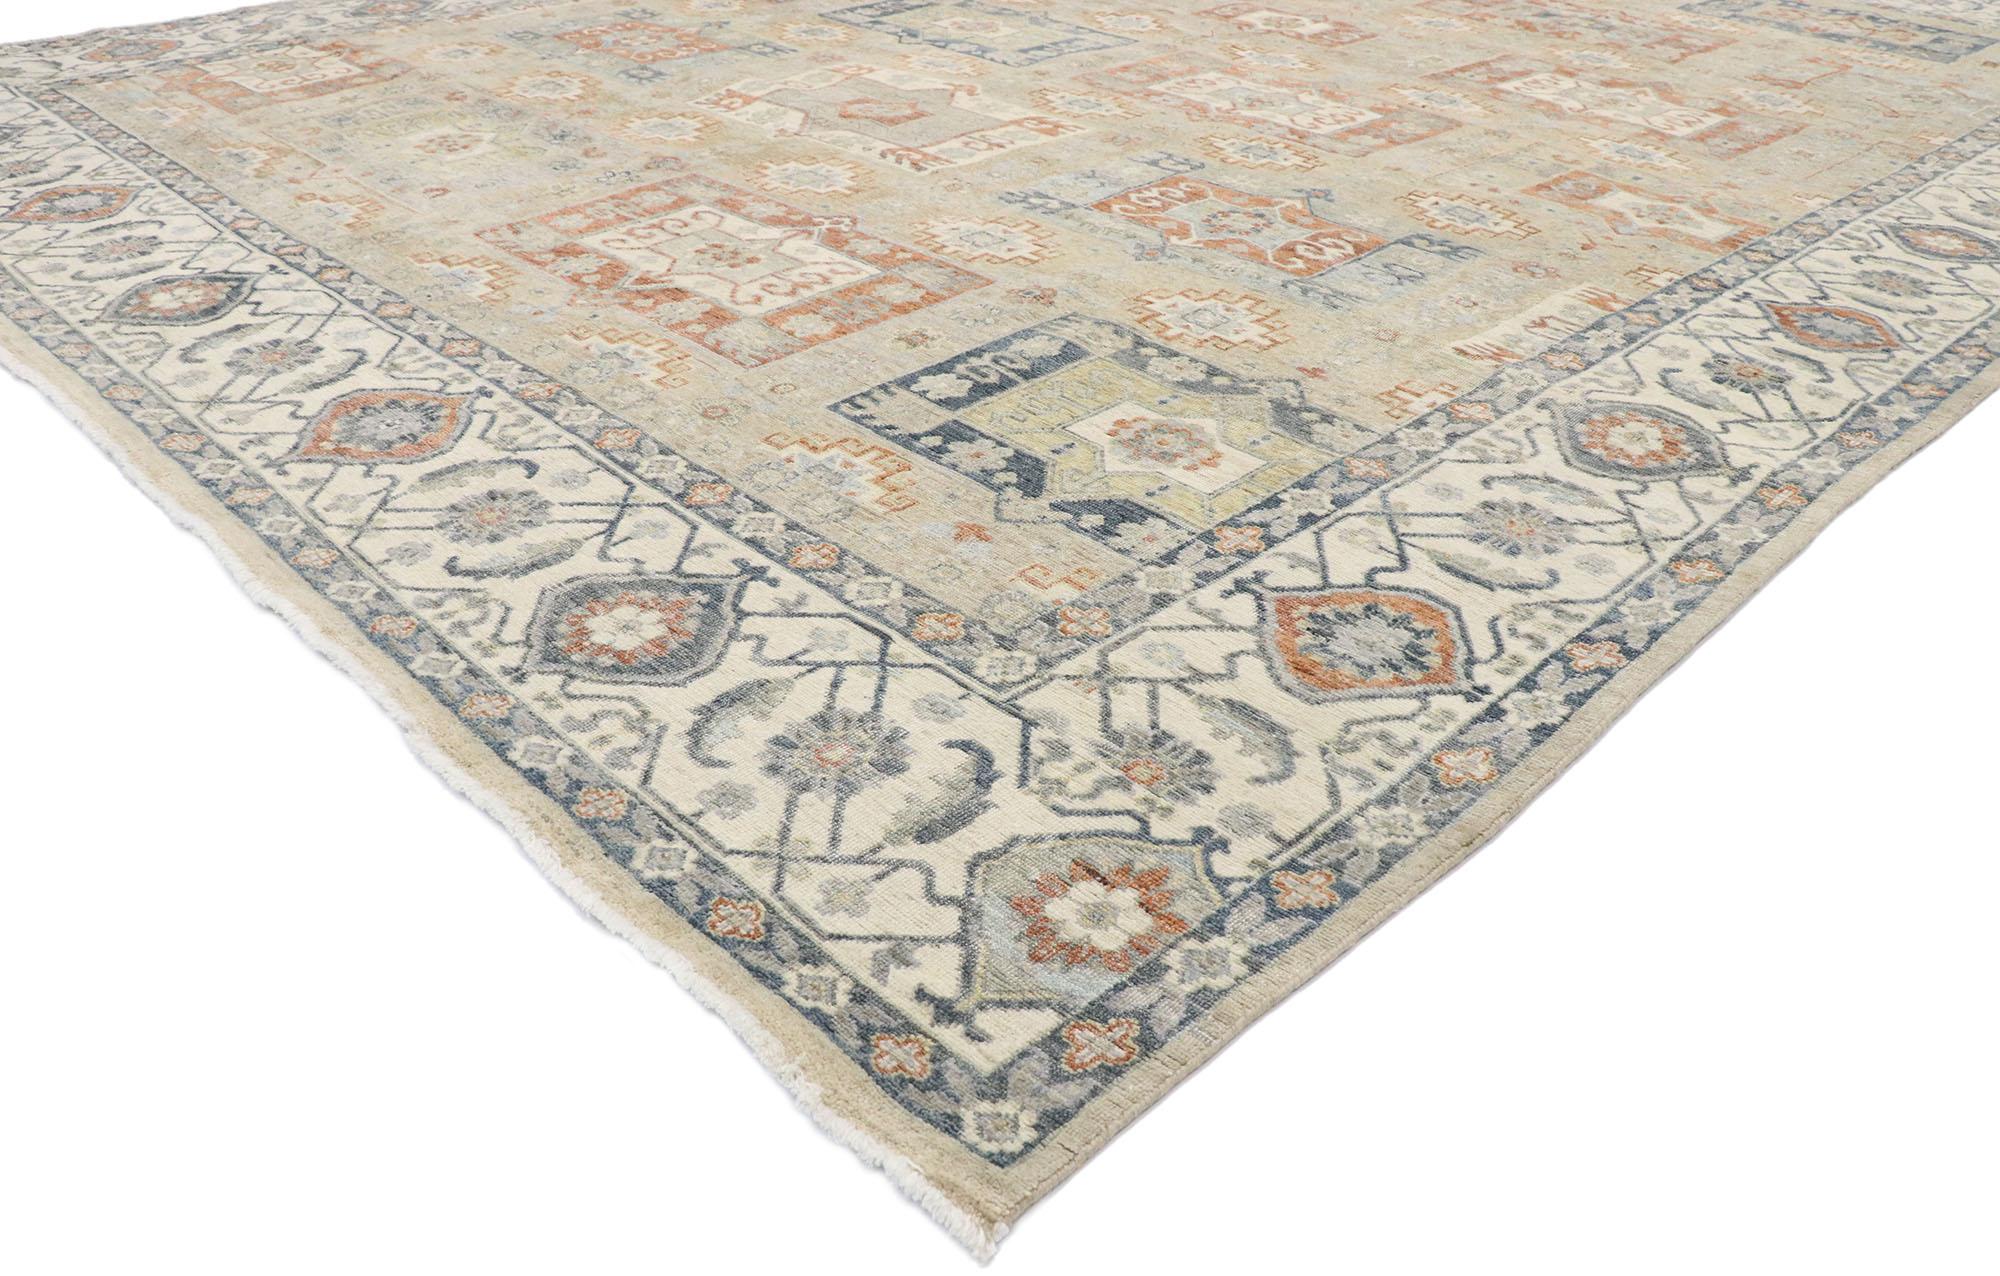 30630, nouveau tapis contemporain de style Oushak avec un style Arts & Crafts. Ce tapis contemporain de style Oushak, en laine nouée à la main, présente un motif géométrique recouvrant un champ neutre abrasé. Ce motif attrayant est composé de